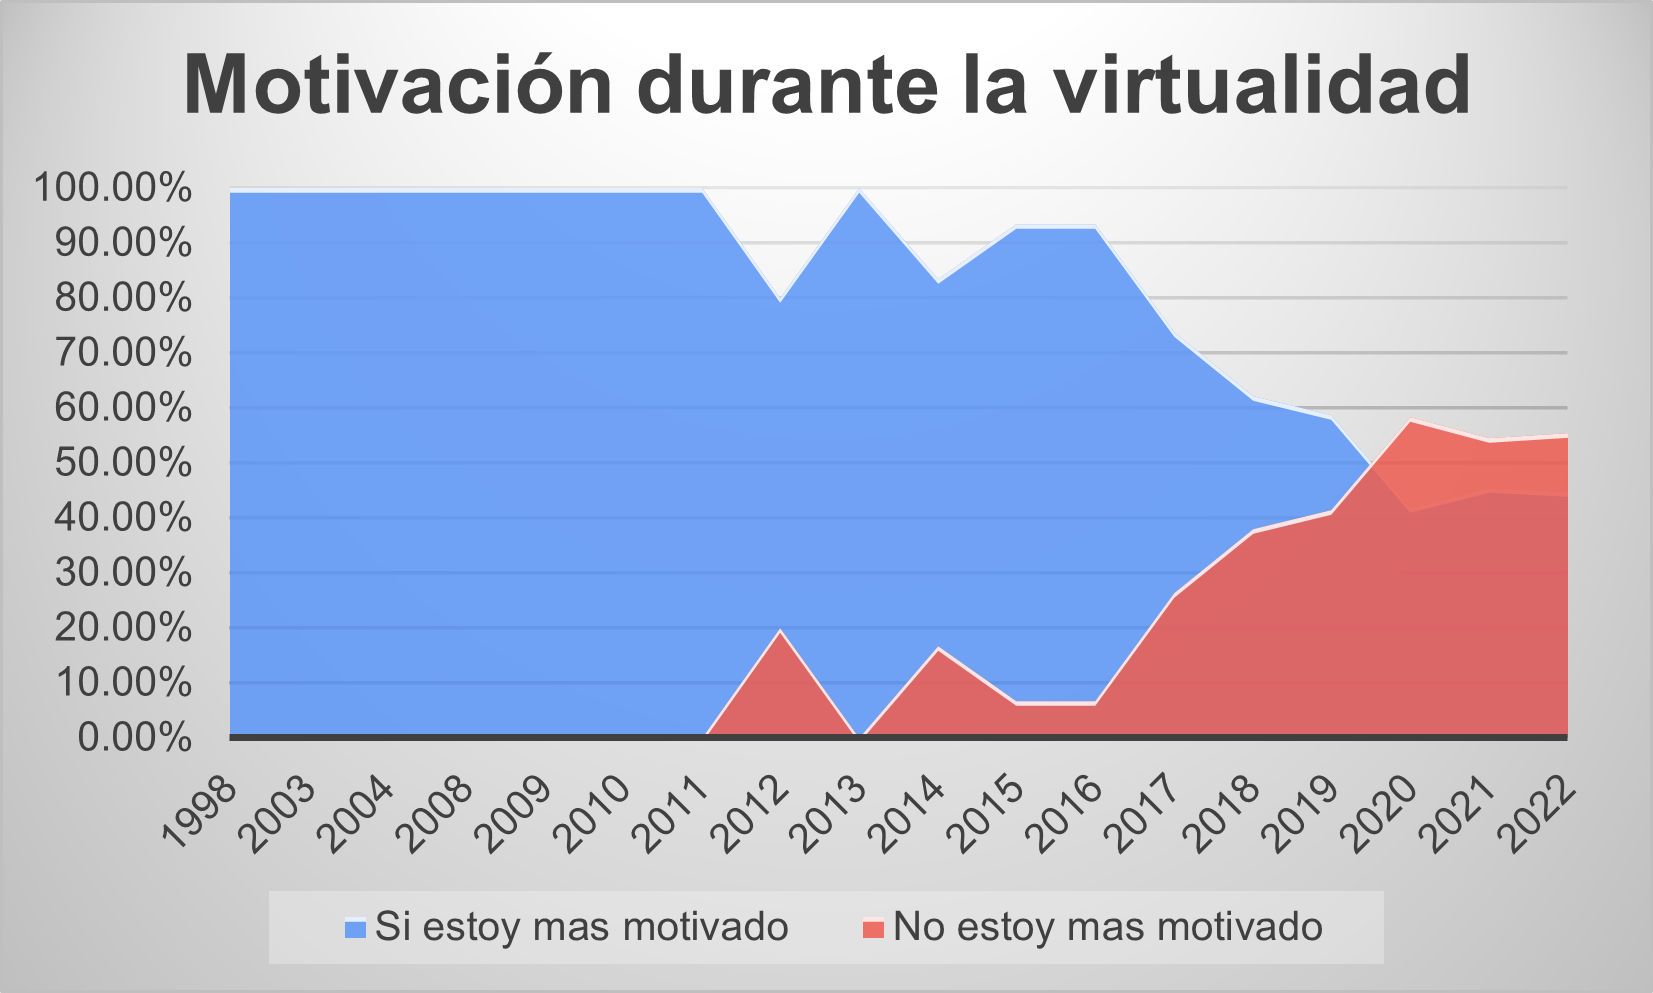 Comparación de opiniones sobre la motivación durante la virtualidad. Fuente: Elaboración propia